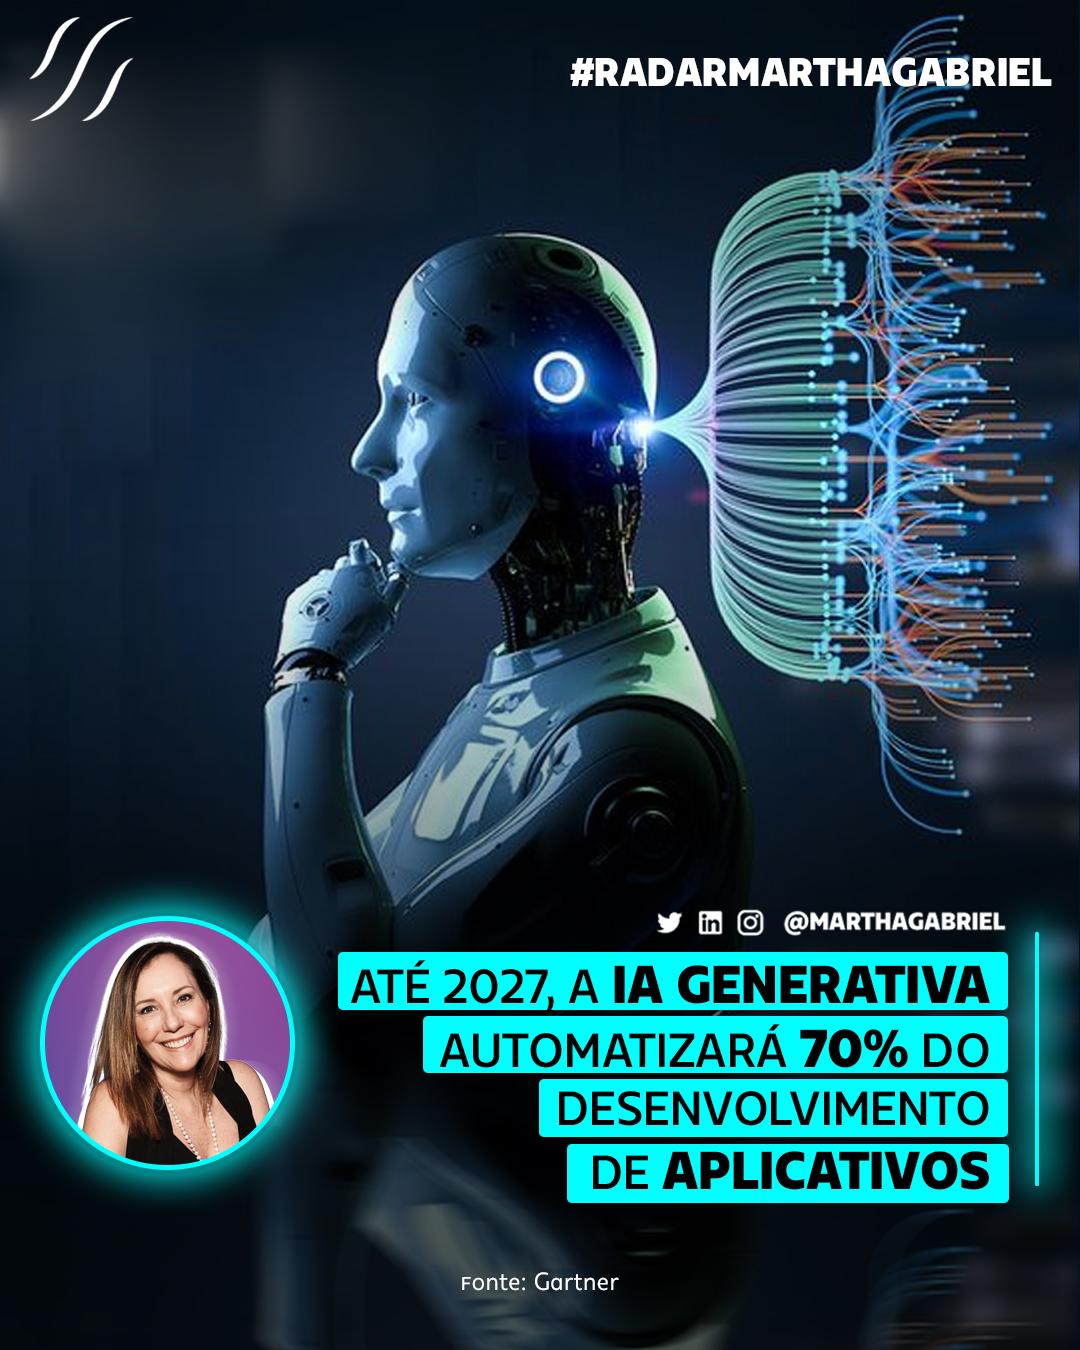 Até 2027, a Inteligência Artificial Generativa automatizará 70% do desenvolvimento de aplicativos